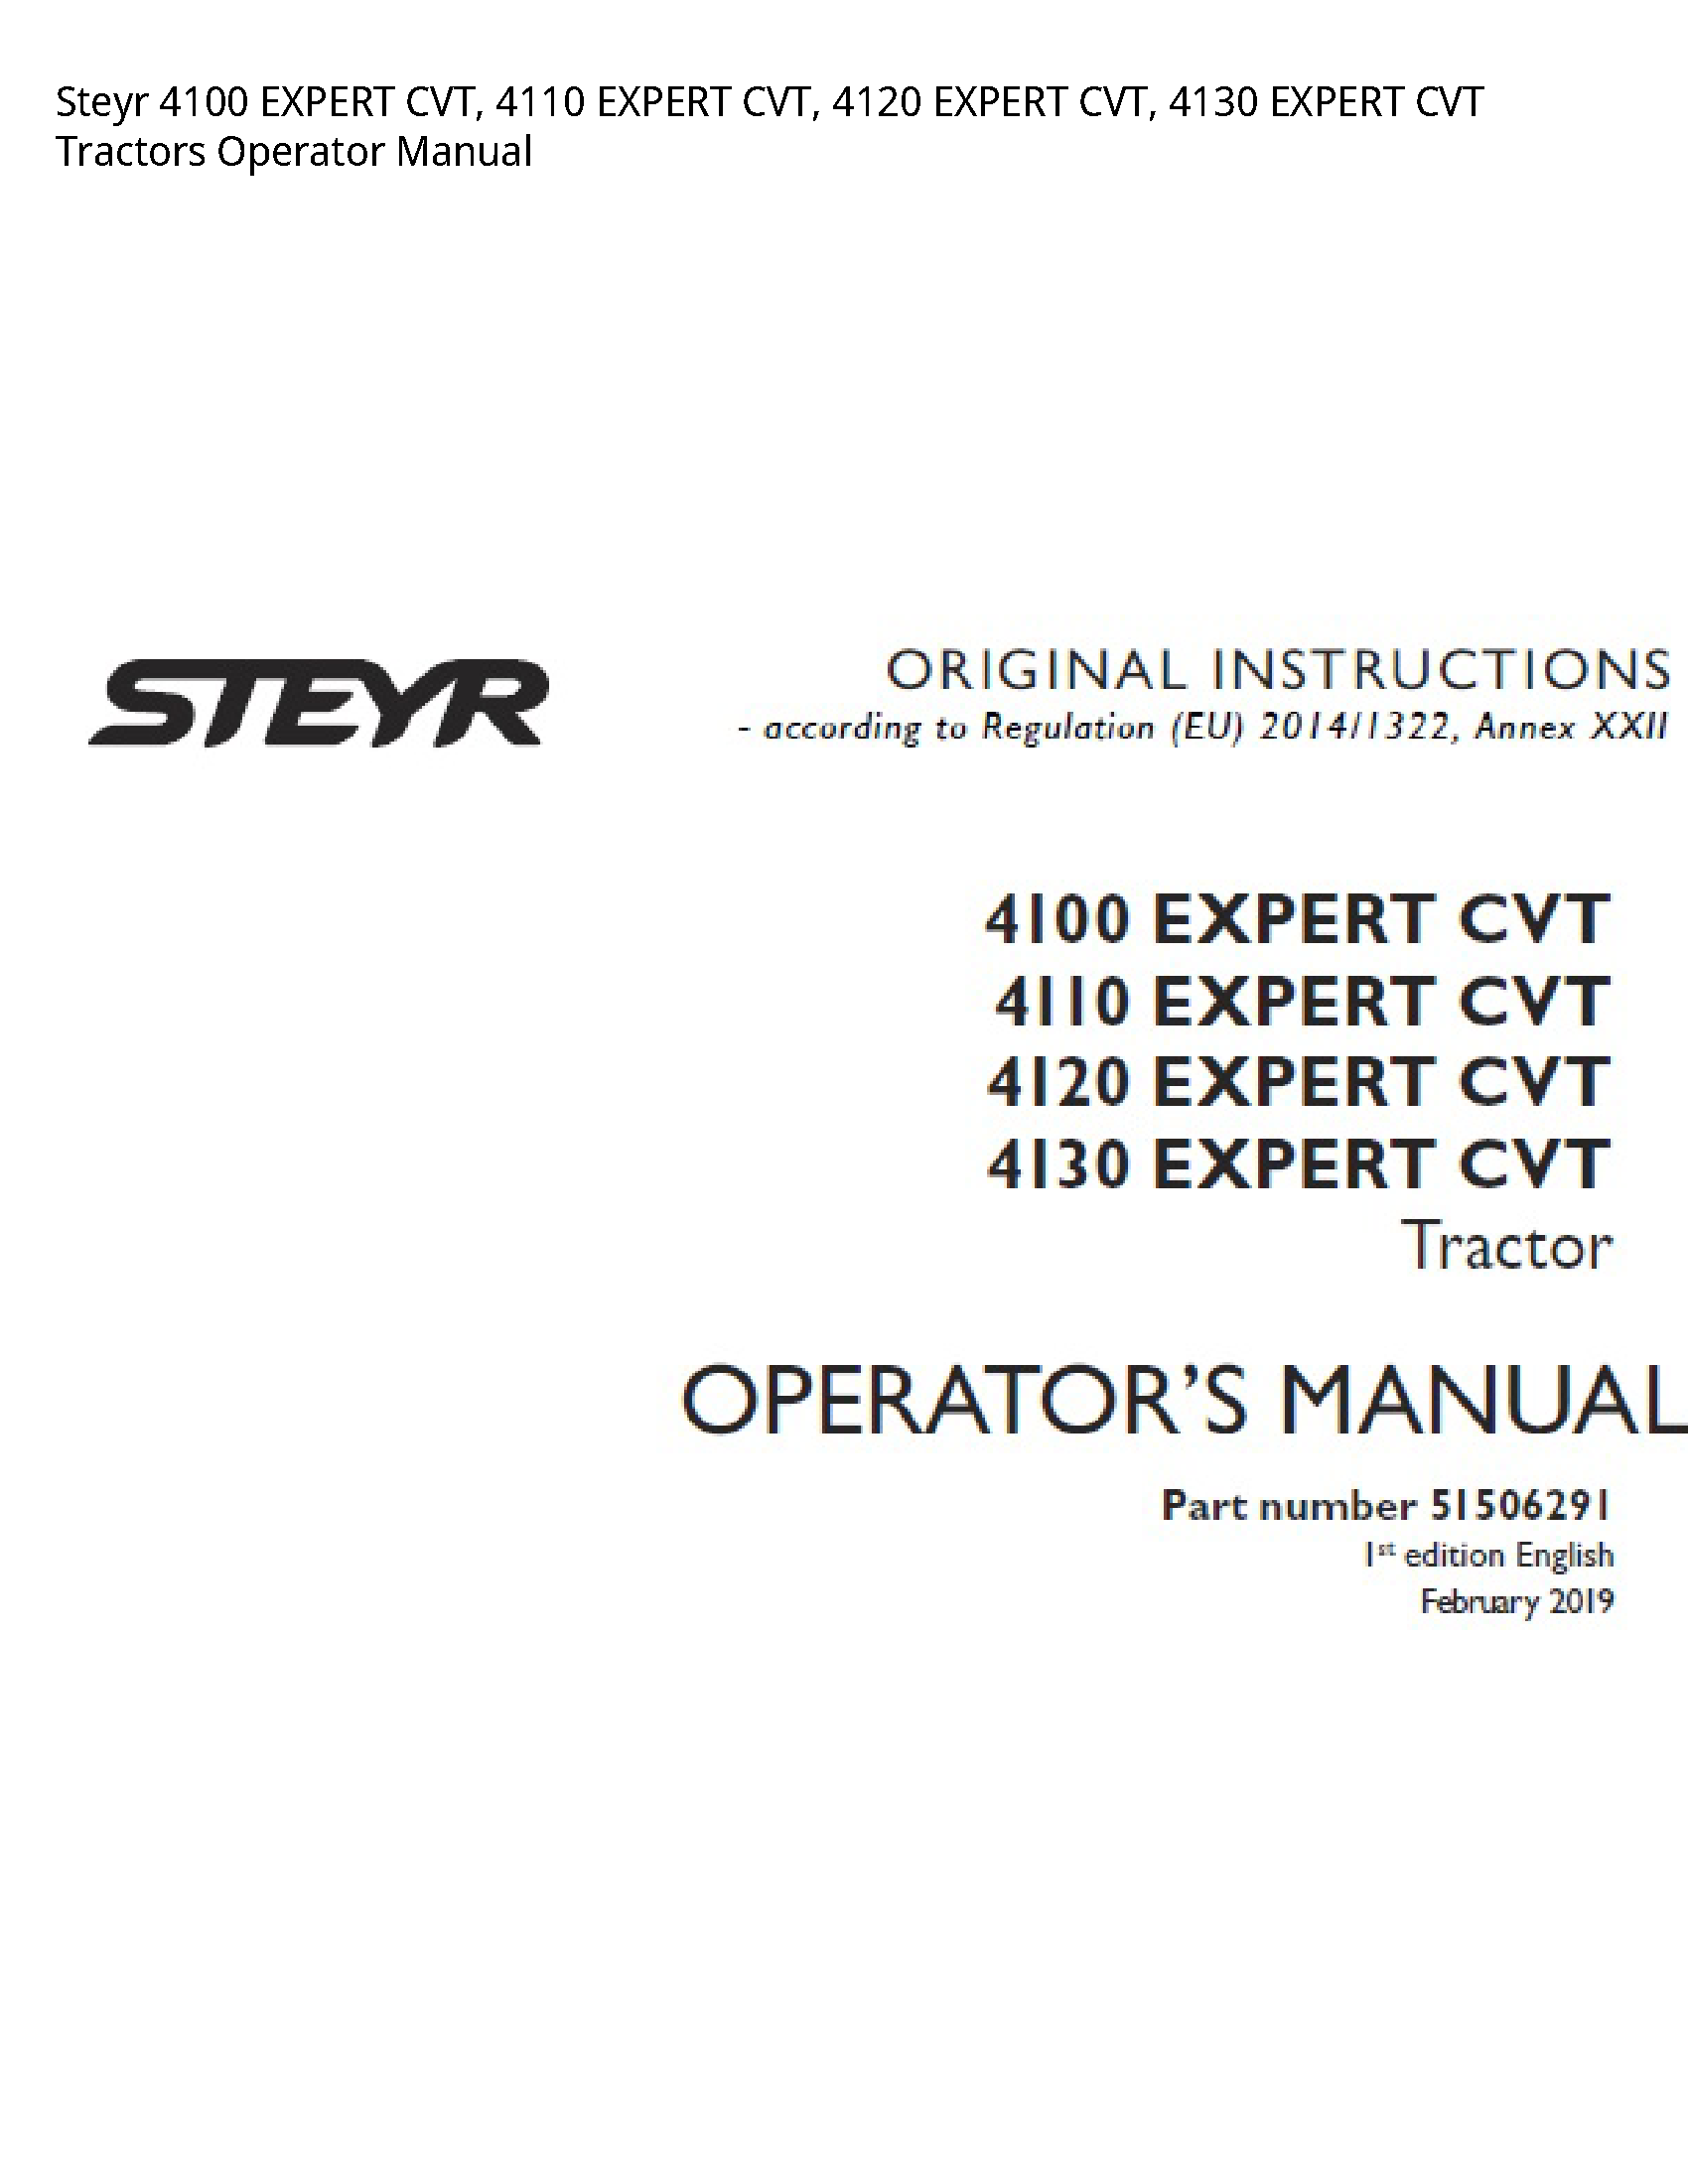 Steyr 4100 EXPERT CVT manual